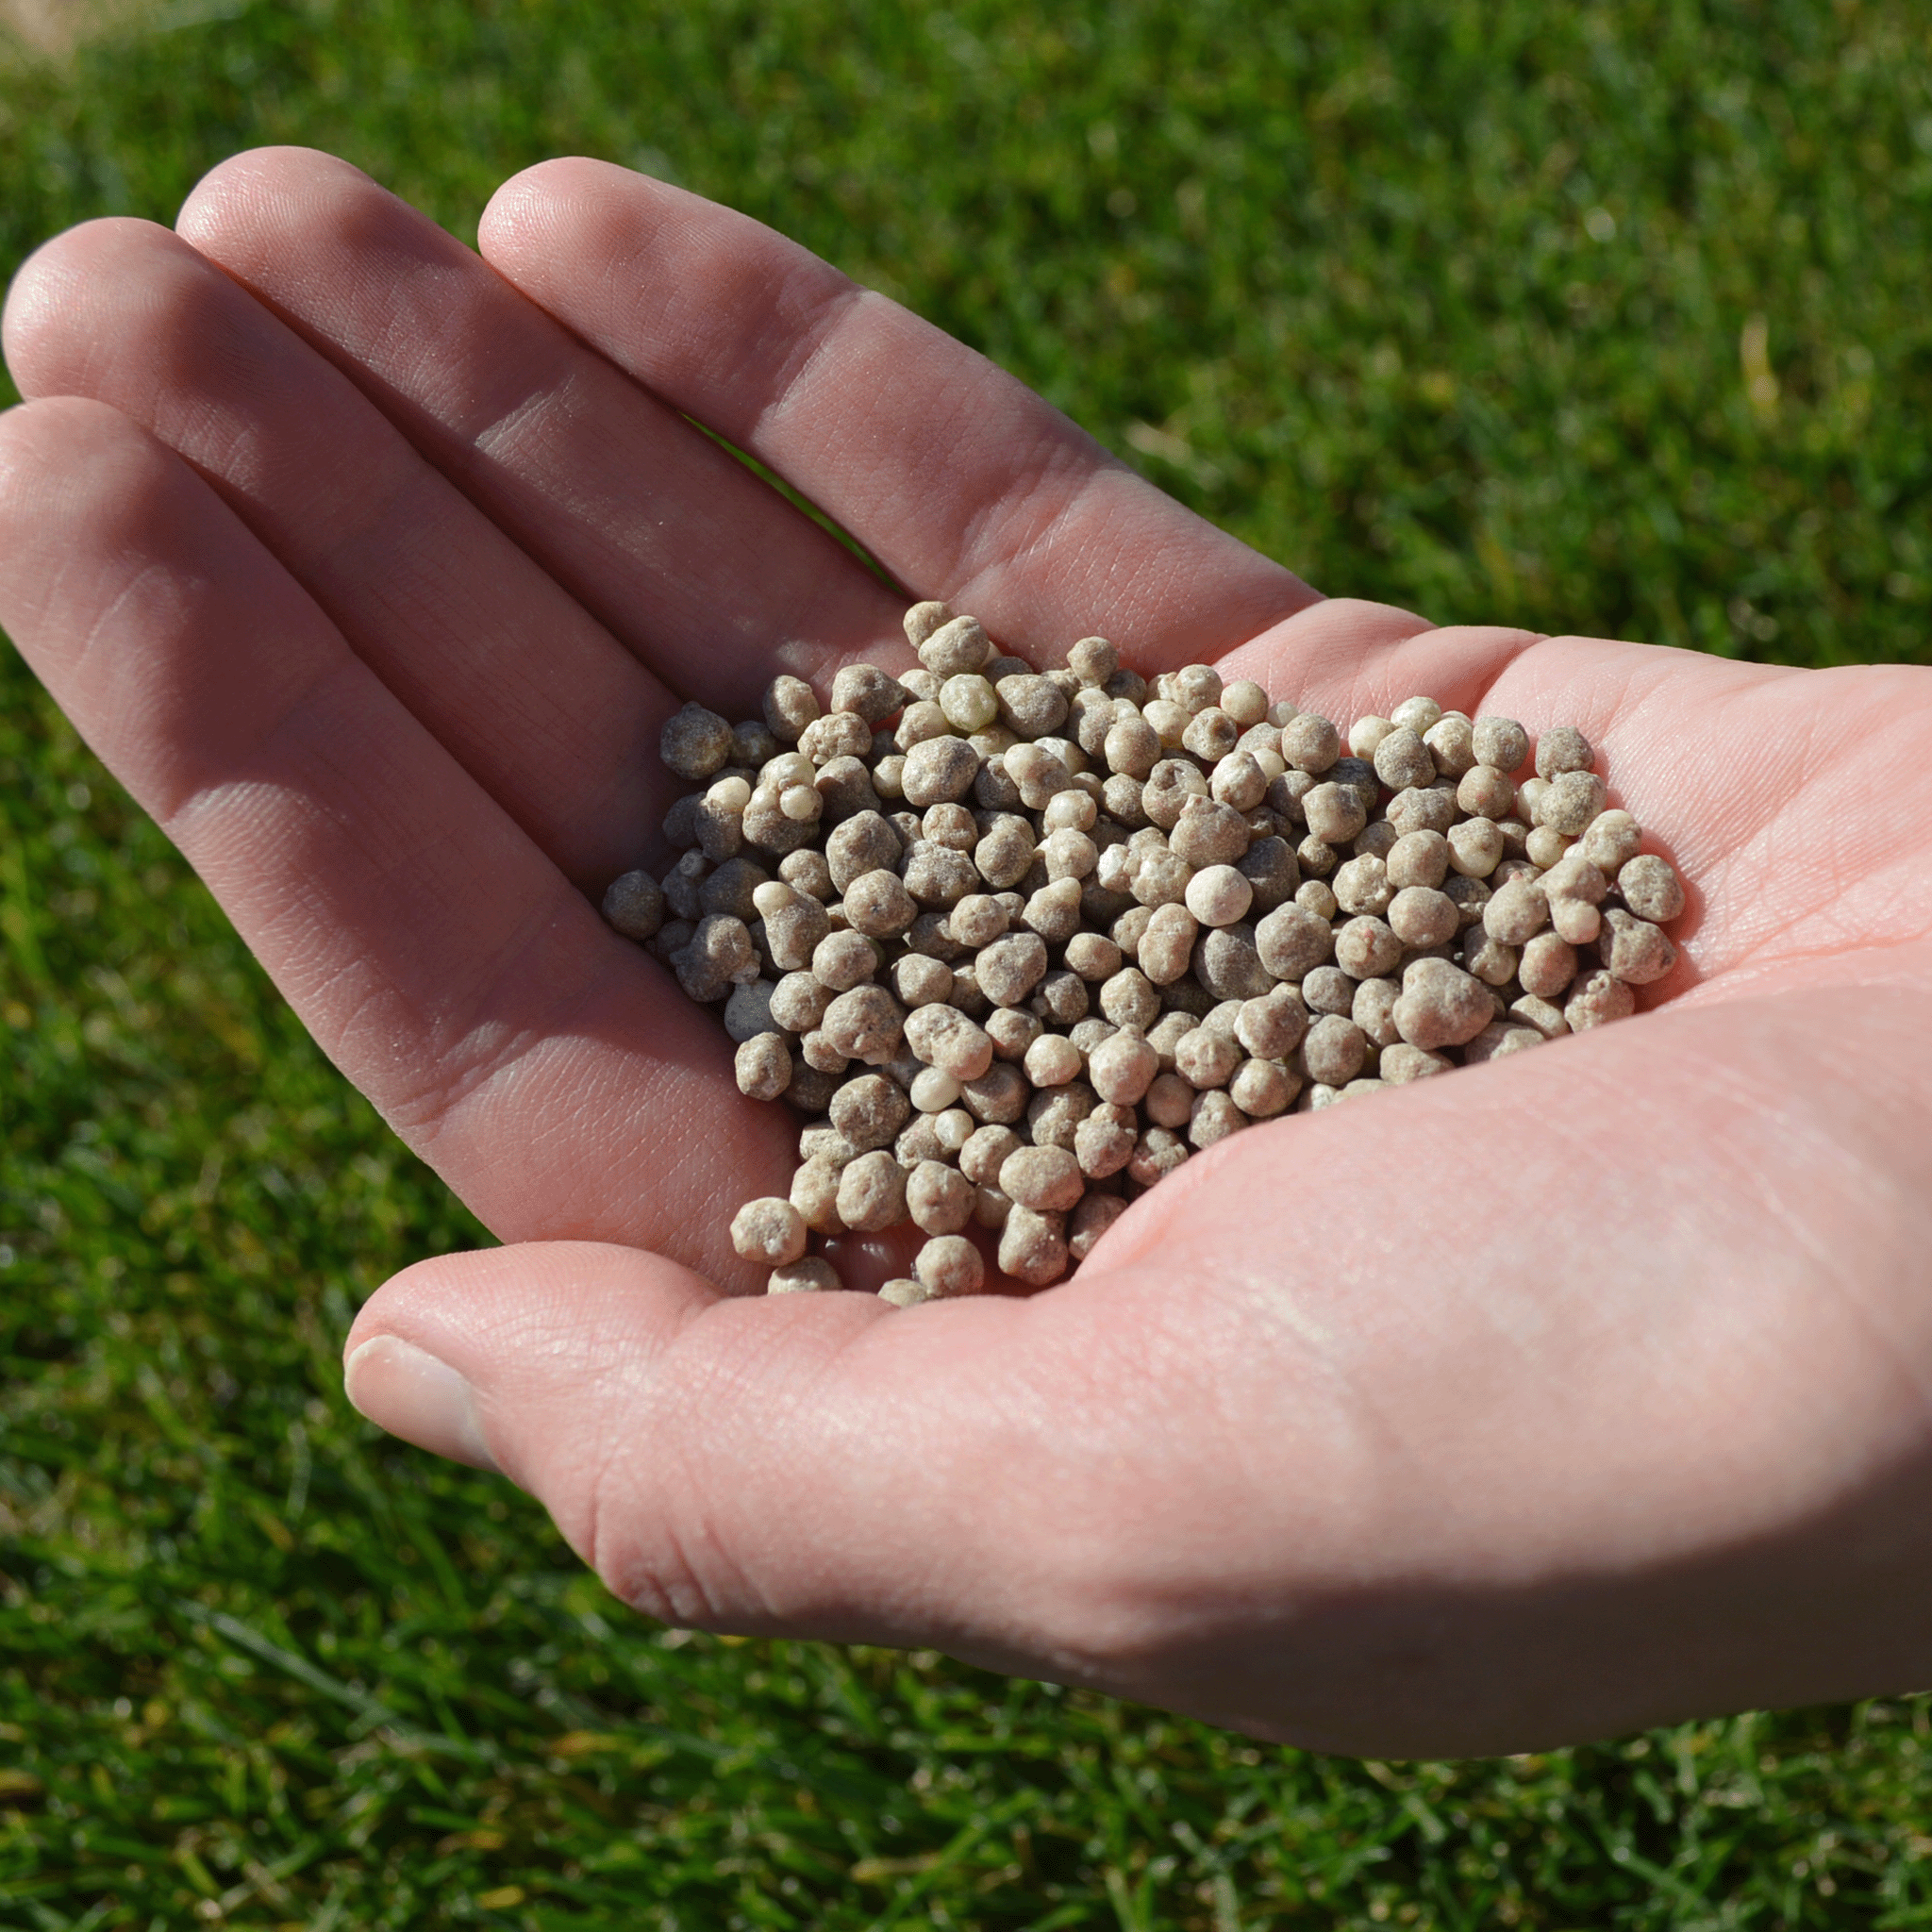 Grass Food fertilizante granulado Grass4you_Adubo para relva